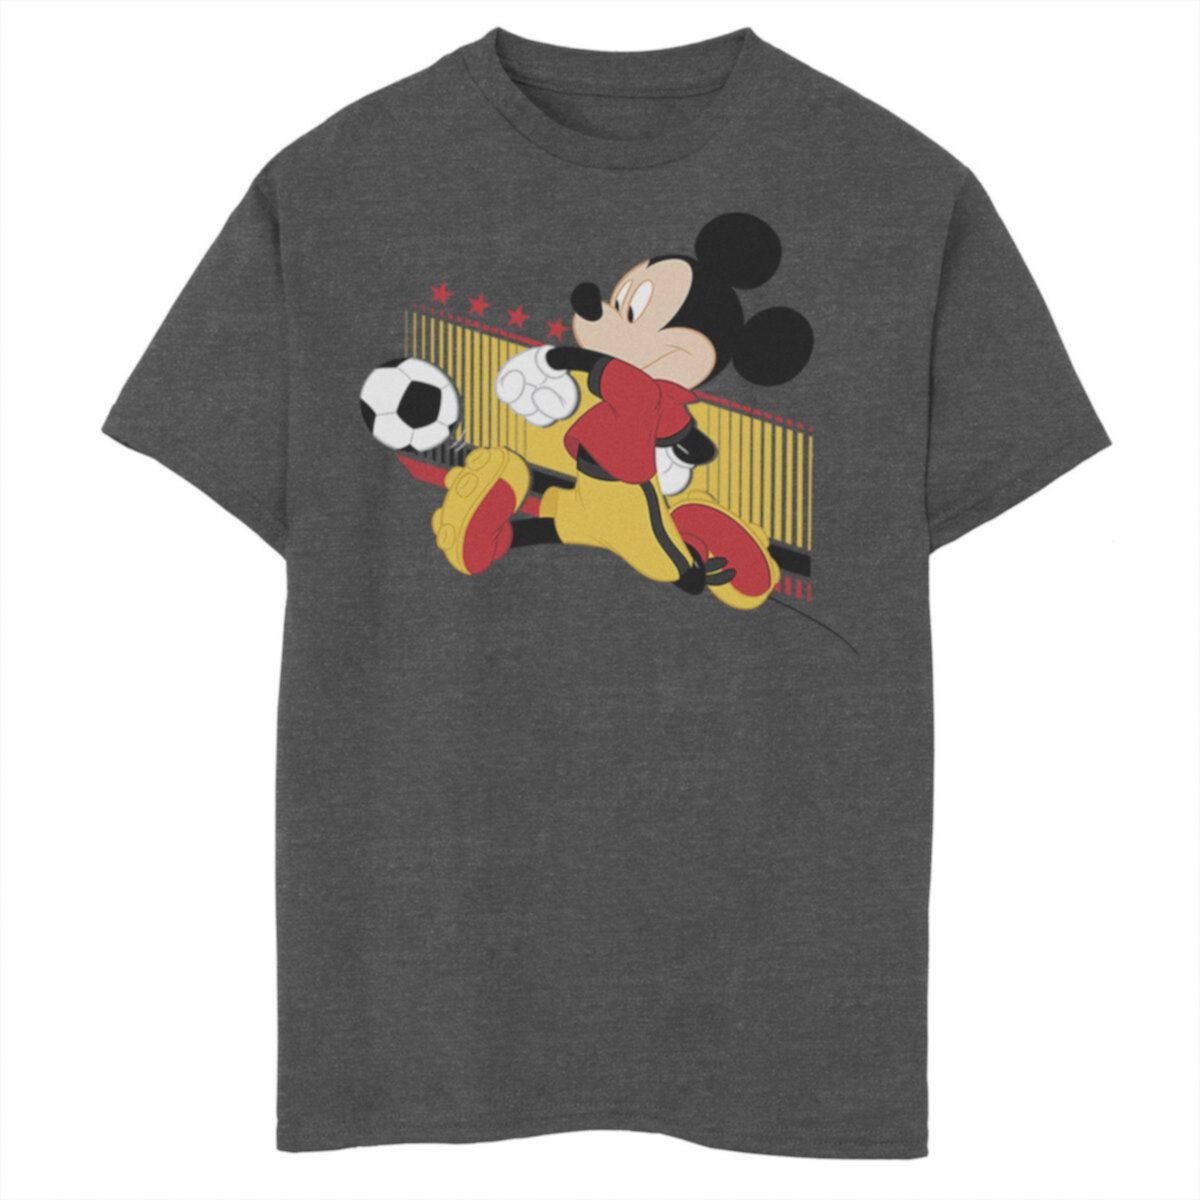 Футболка с портретом Микки Мауса Disney's Licensed Character